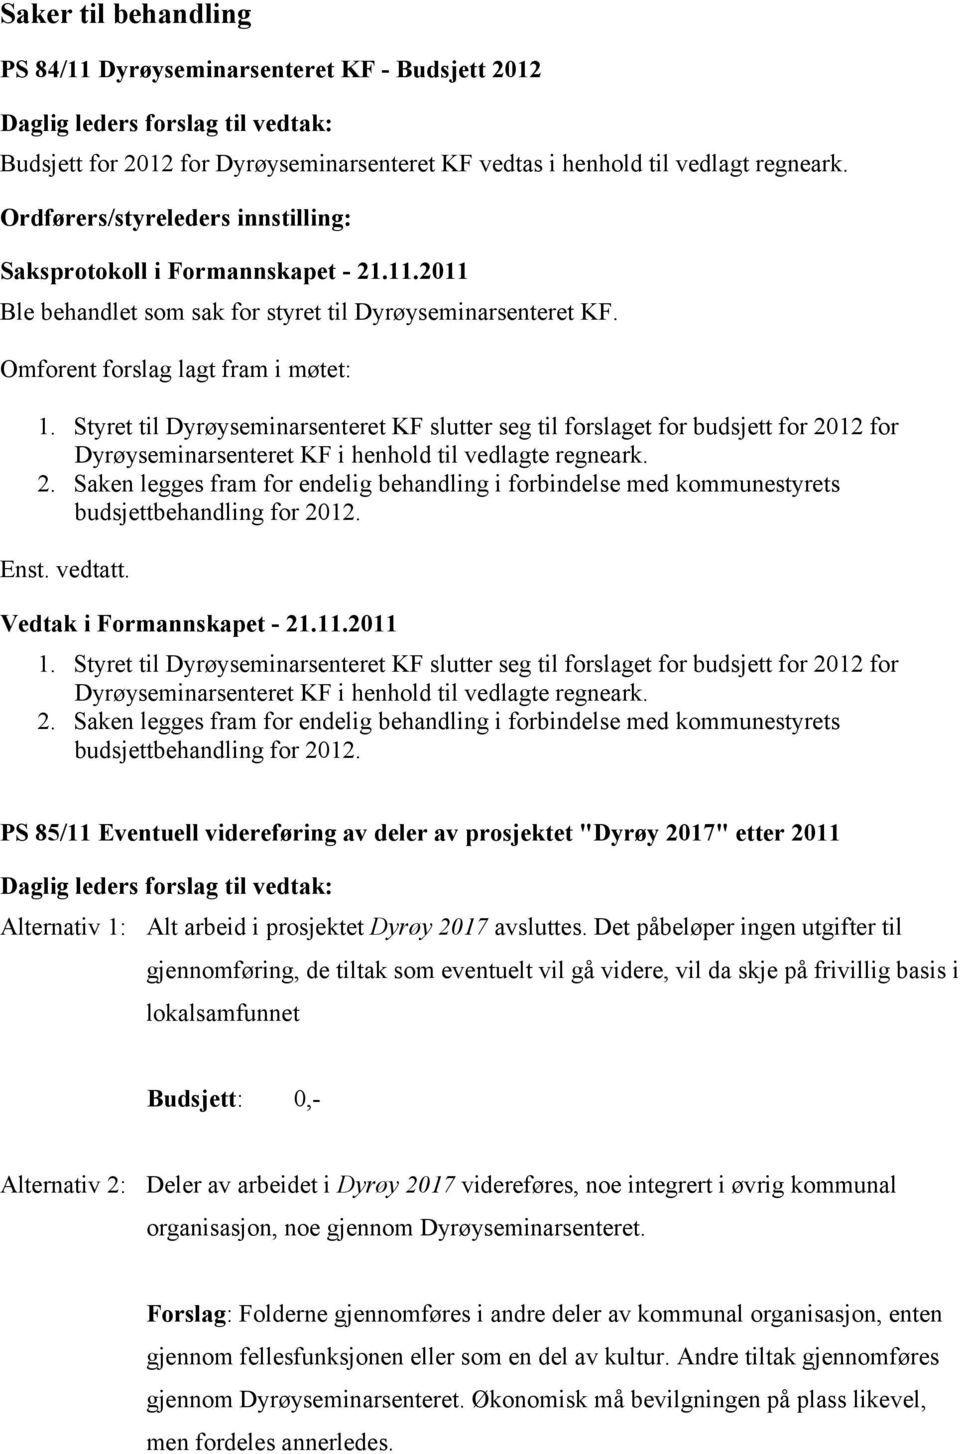 Styret til Dyrøyseminarsenteret KF slutter seg til forslaget for budsjett for 2012 for Dyrøyseminarsenteret KF i henhold til vedlagte regneark. 2. Saken legges fram for endelig behandling i forbindelse med kommunestyrets budsjettbehandling for 2012.